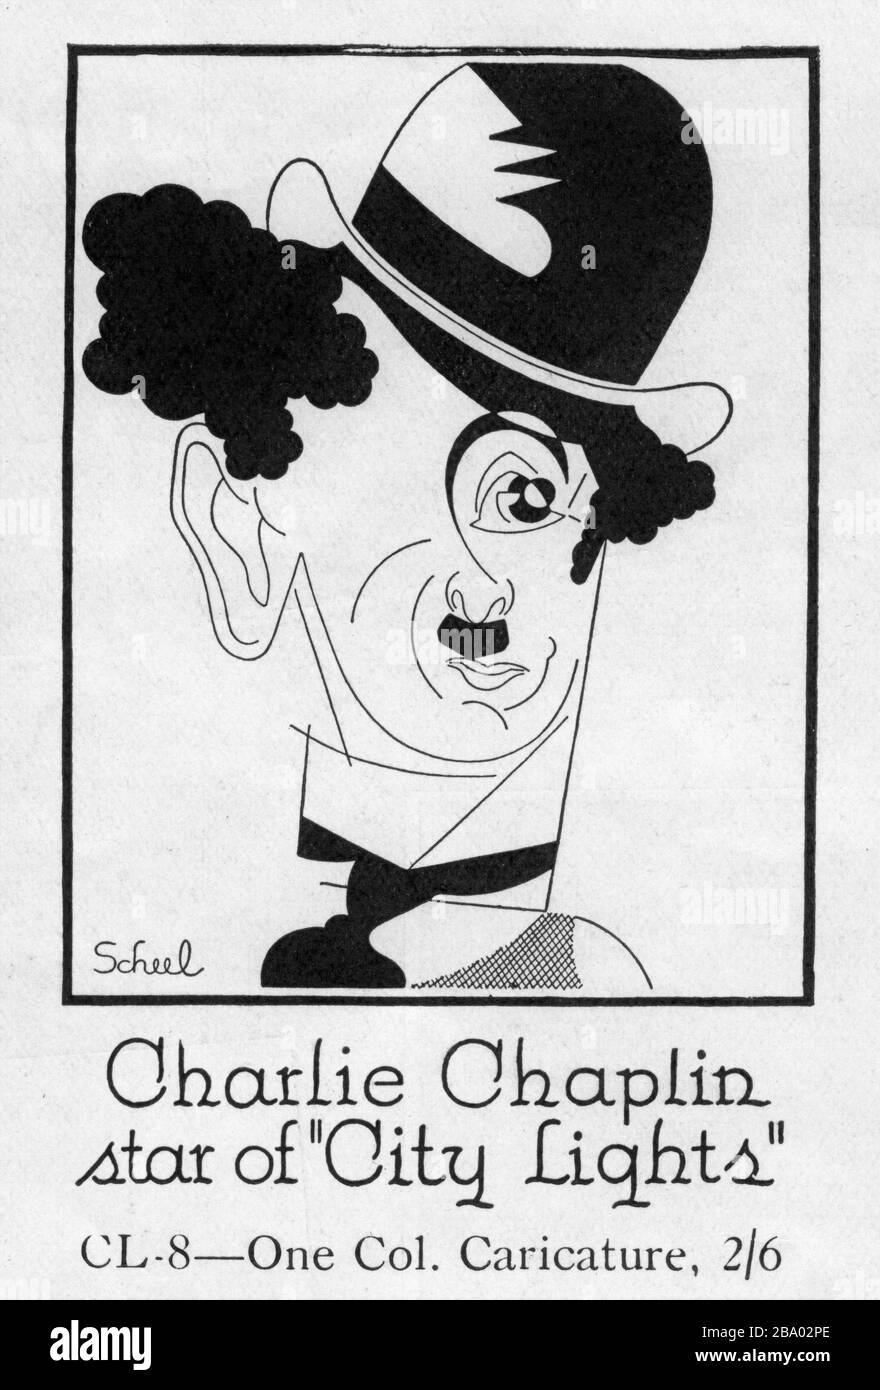 CHARLIE CHAPLIN come il Tramp in CITY LIGHTS 1931 scritto e diretto da CHARLES CHAPLIN silenzioso commedia film con musica partitura Charles Chaplin Productions / United Artists Foto Stock